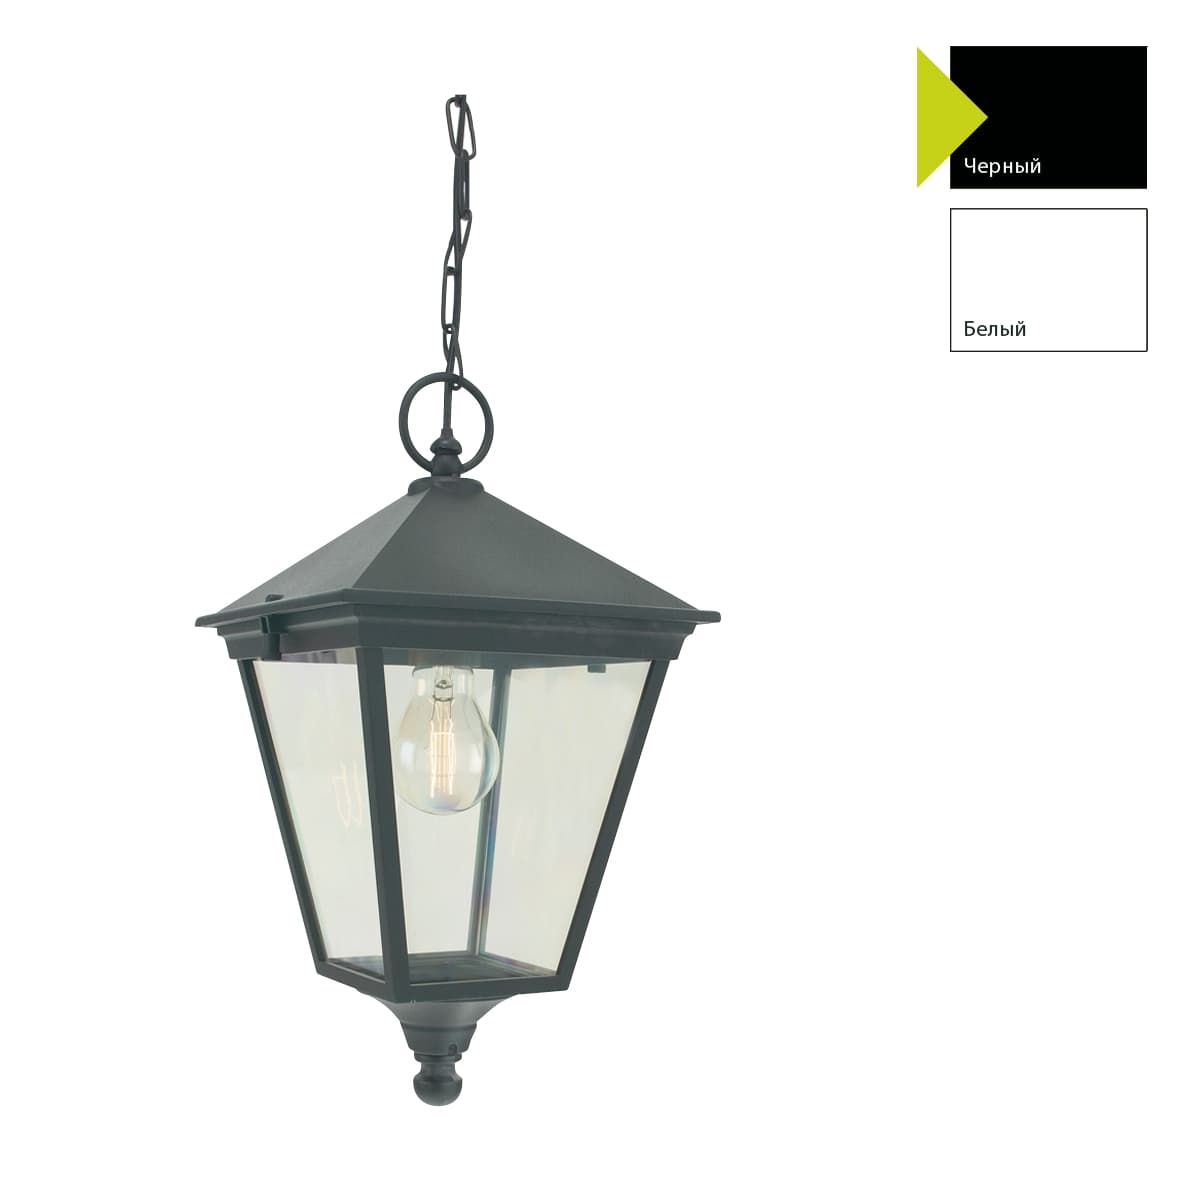 Уличный подвесной светильник Norlys LONDON 481A/B, цвет черный